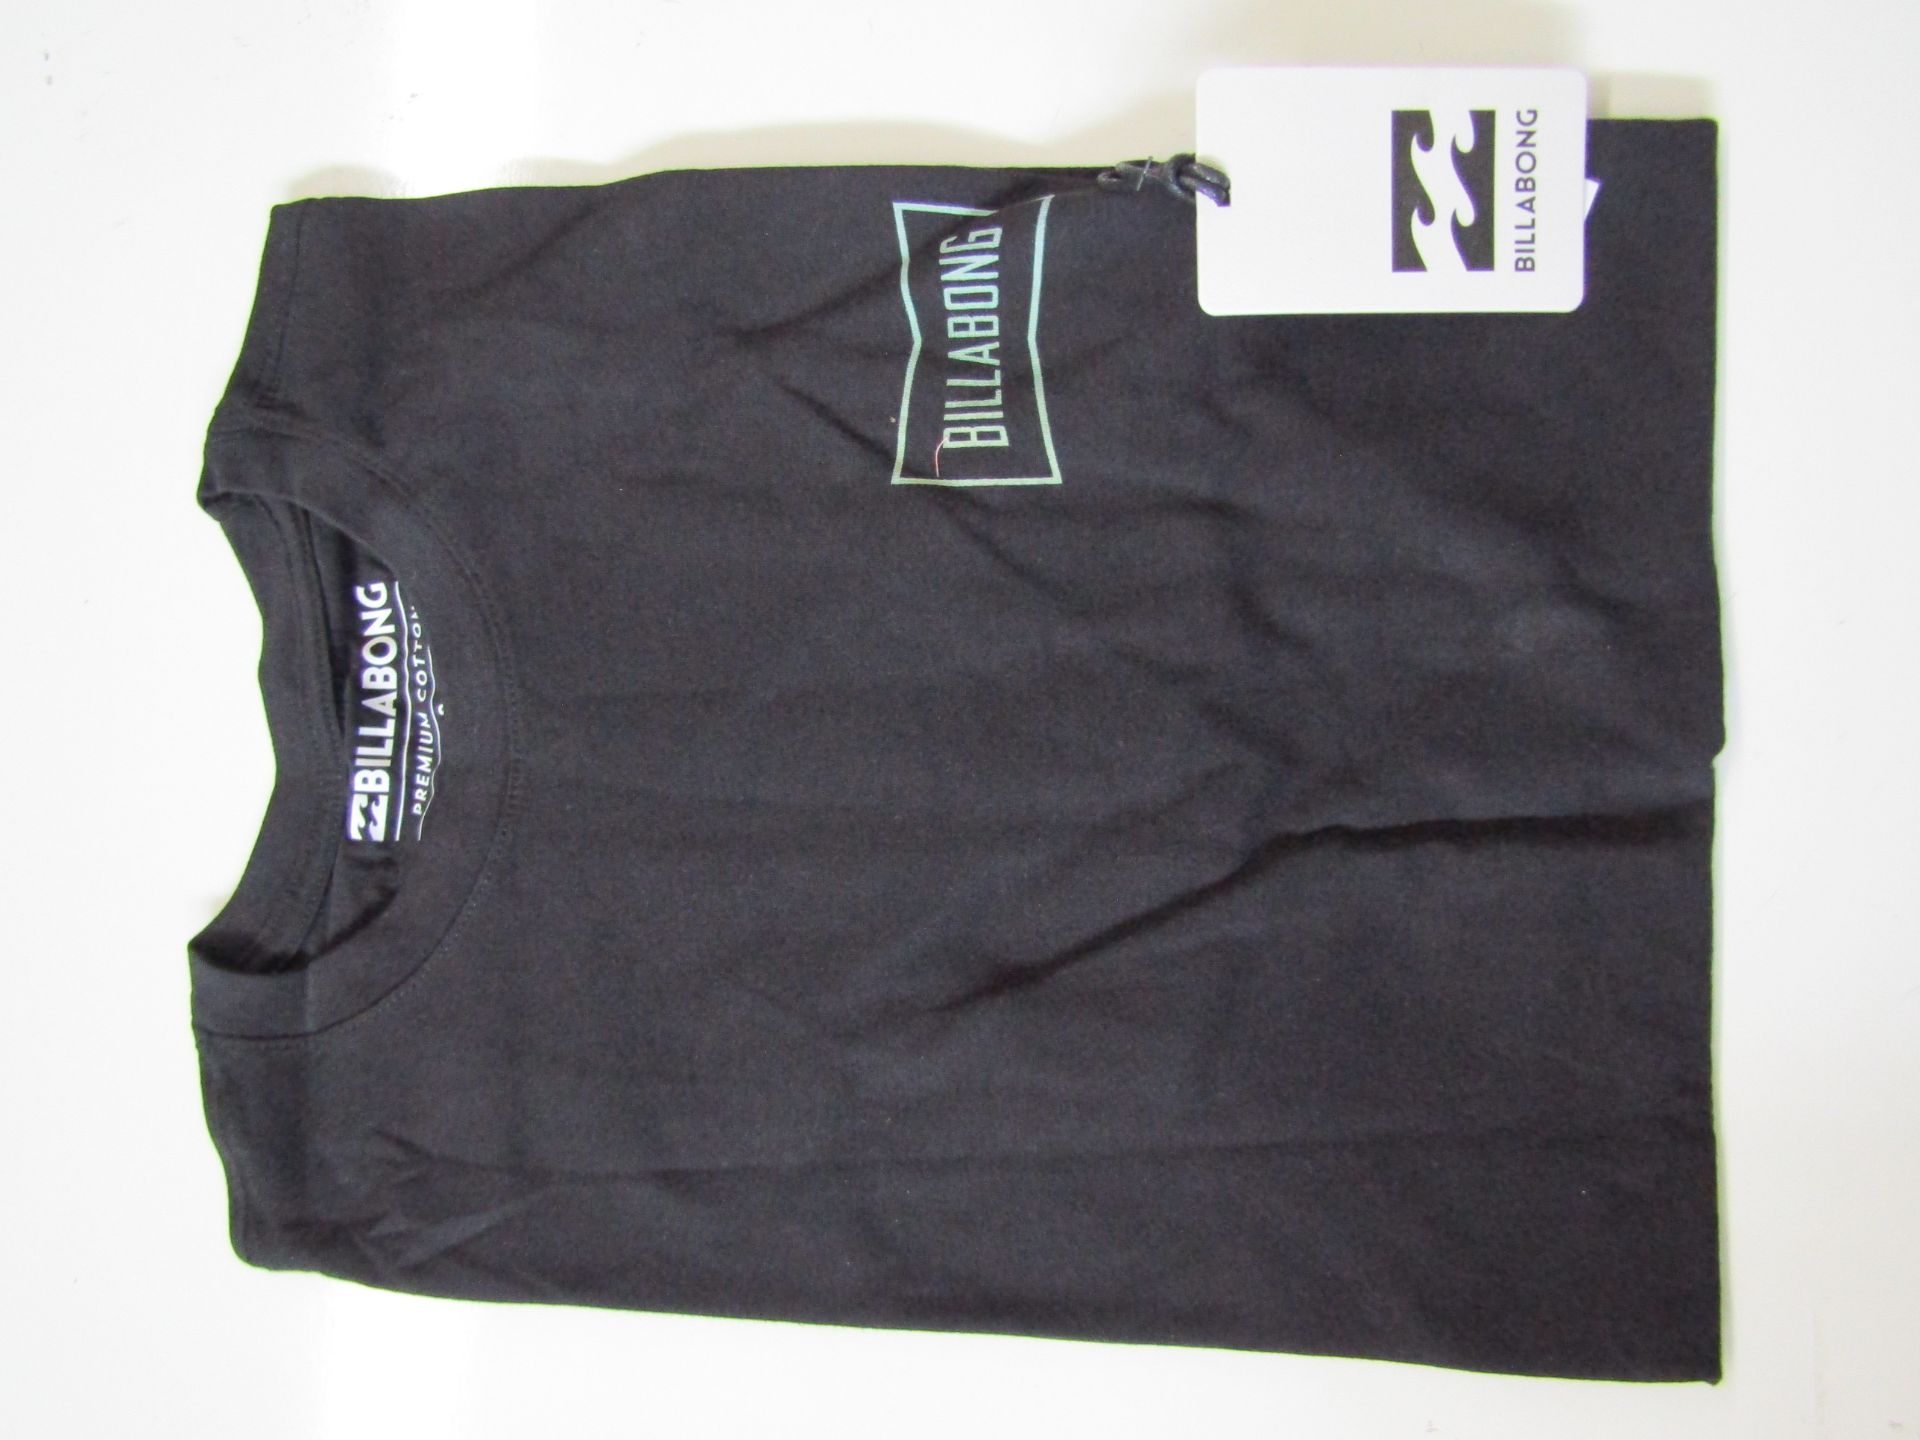 Billabong T/Shirt Black Size M New & Packaged